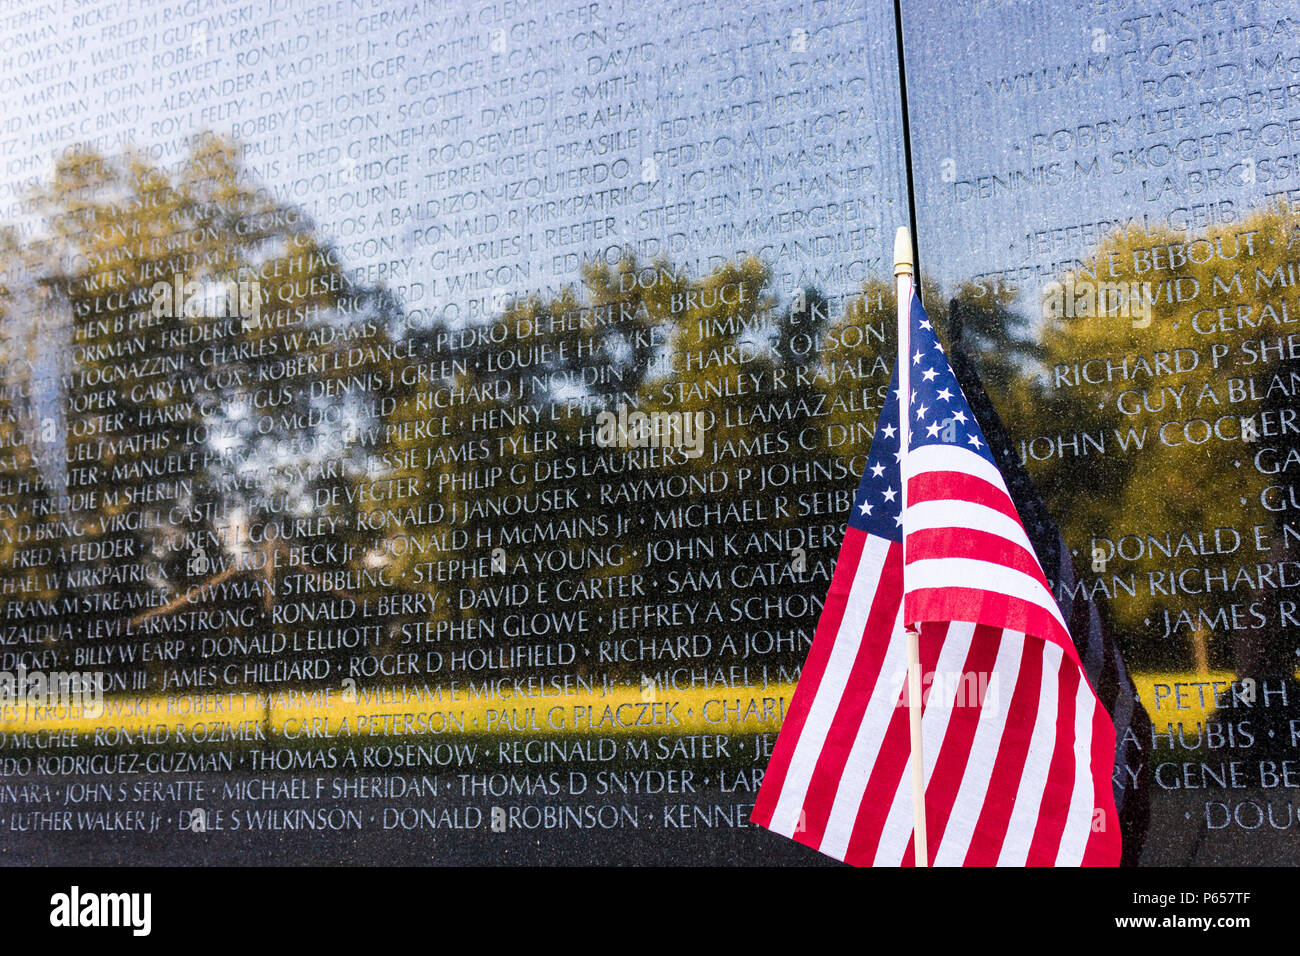 Washington D.C. la Vietnam Veterans Memorial, un service commémoratif national qui honore les membres des forces armées américaines qui ont combattu dans la guerre du Vietnam Banque D'Images